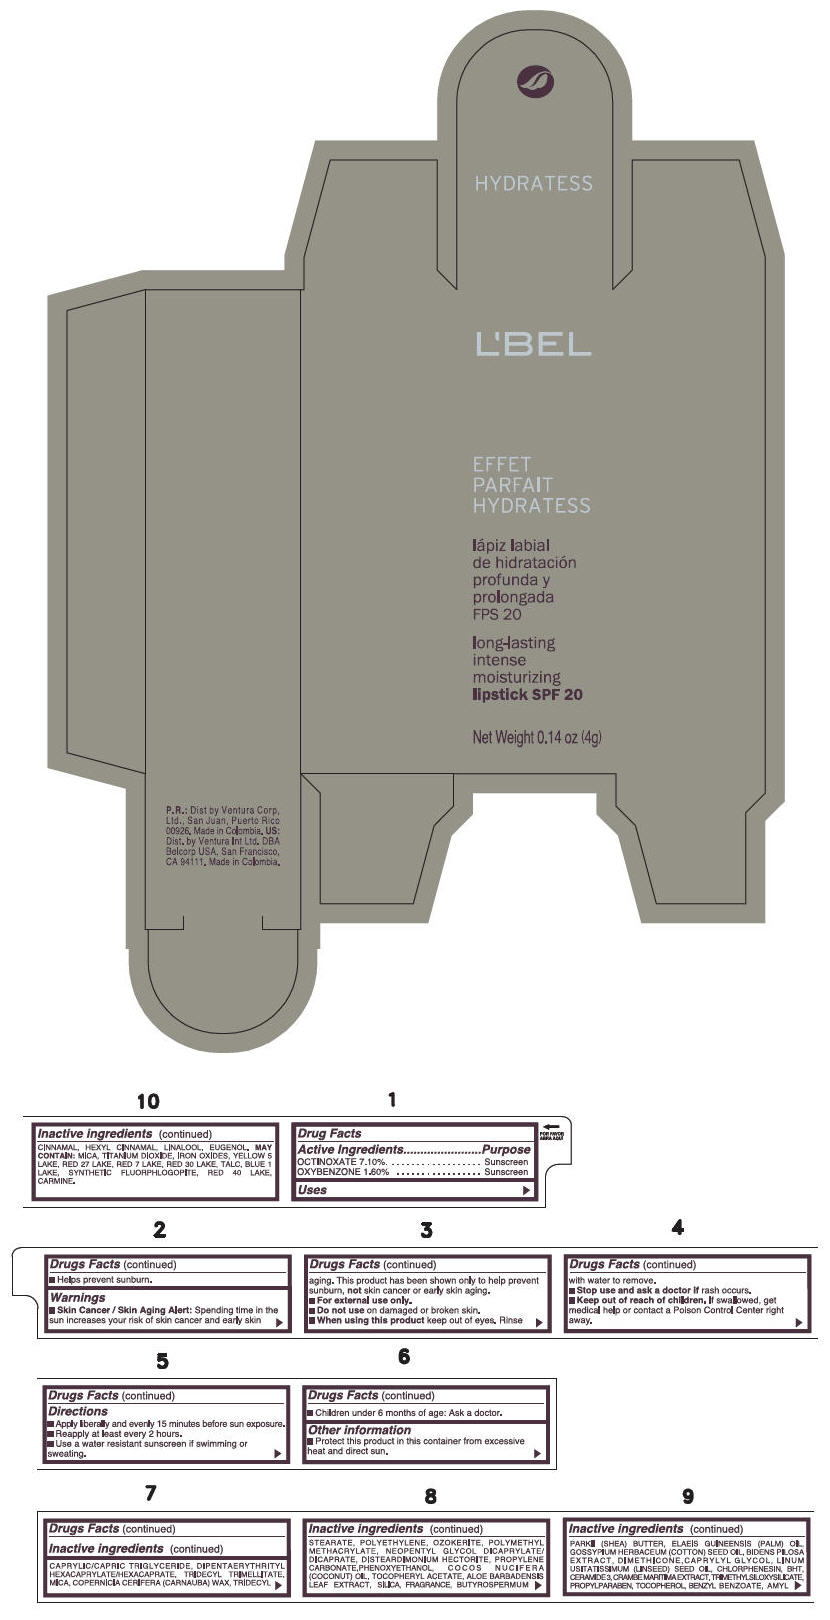 PRINCIPAL DISPLAY PANEL - 4 g Tube Box - (MOKA) - BROWN